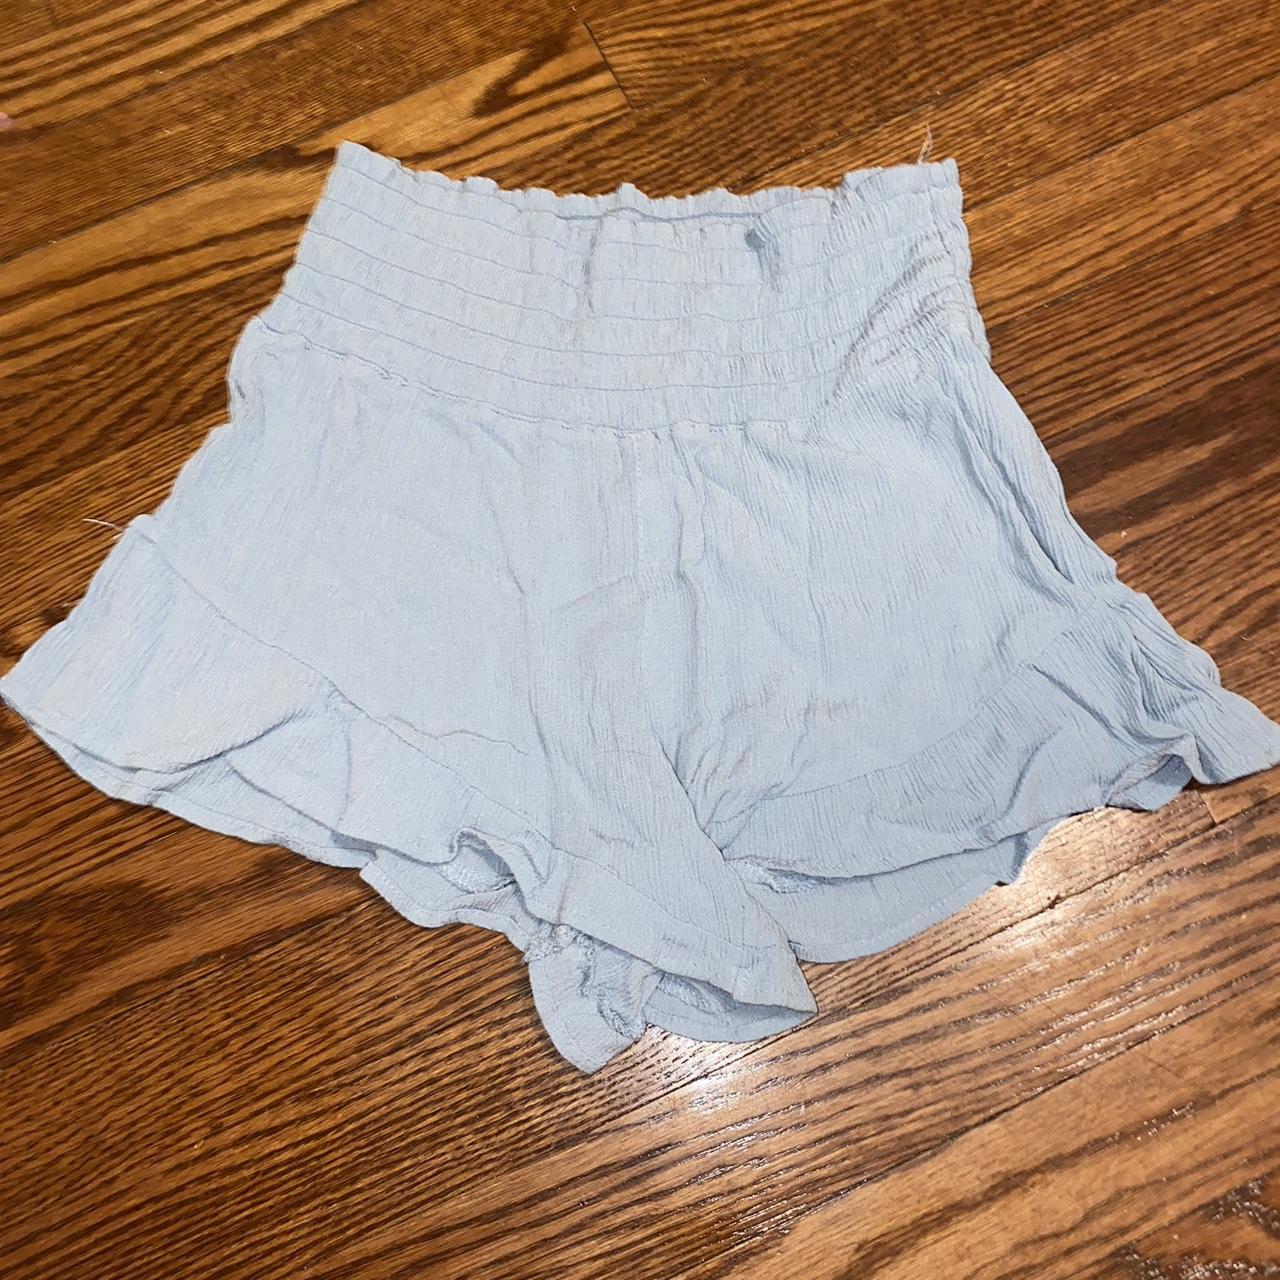 Flowy Shorts, Summer Shorts